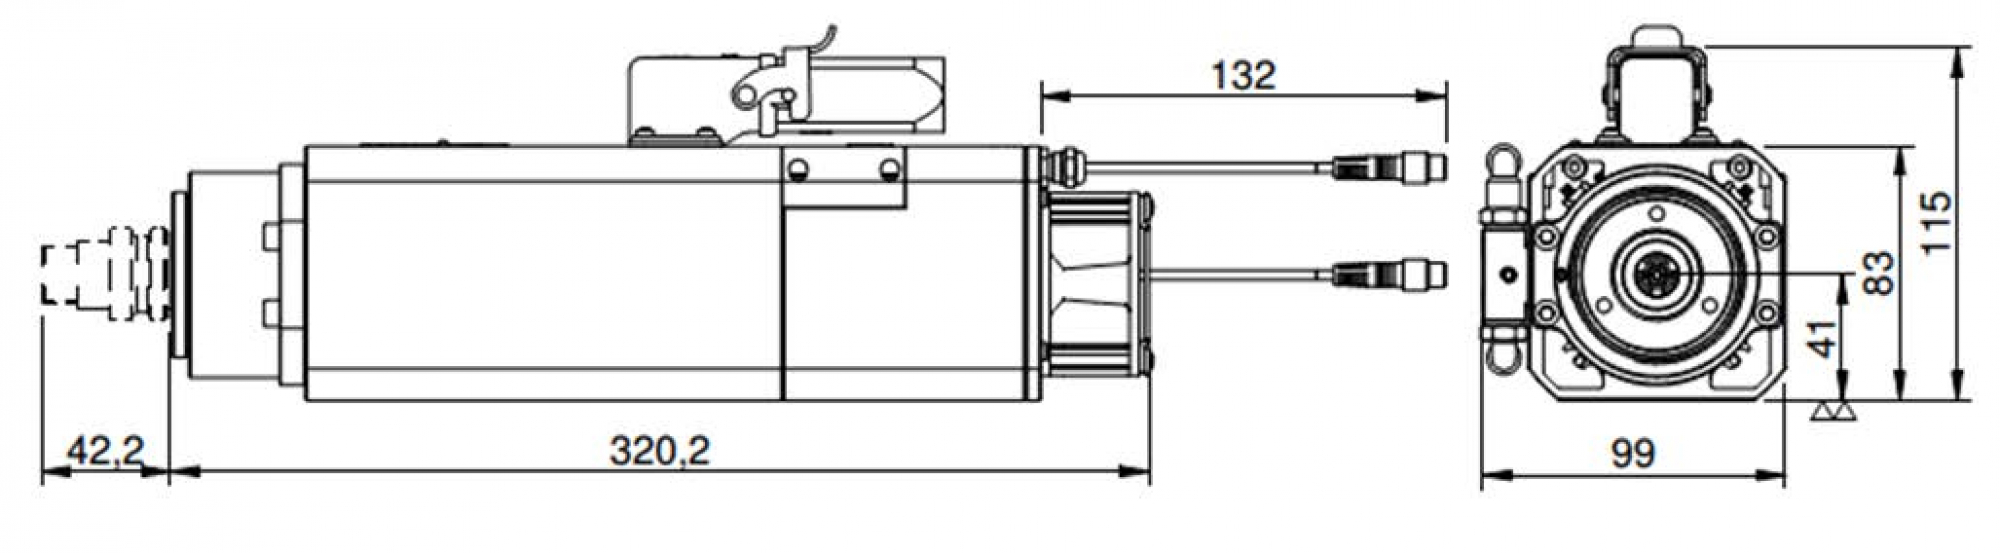 Tool Changer HF-Spindle Teknomotor 24.000 U/min | 1.1 kW | SK20 | 230 V